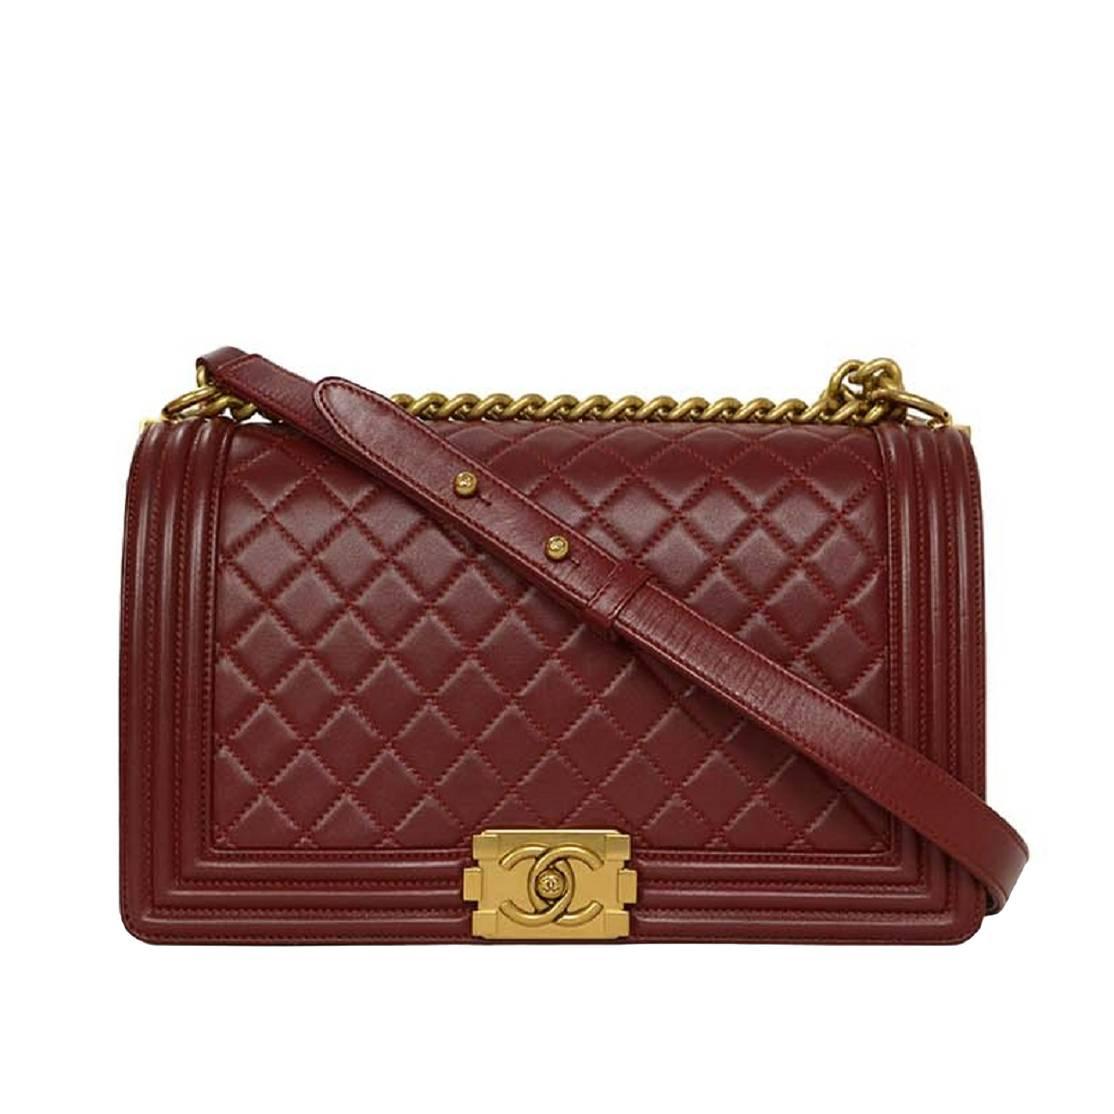 Chanel '15 Burgundy Leather New Medium Boy Bag GHW